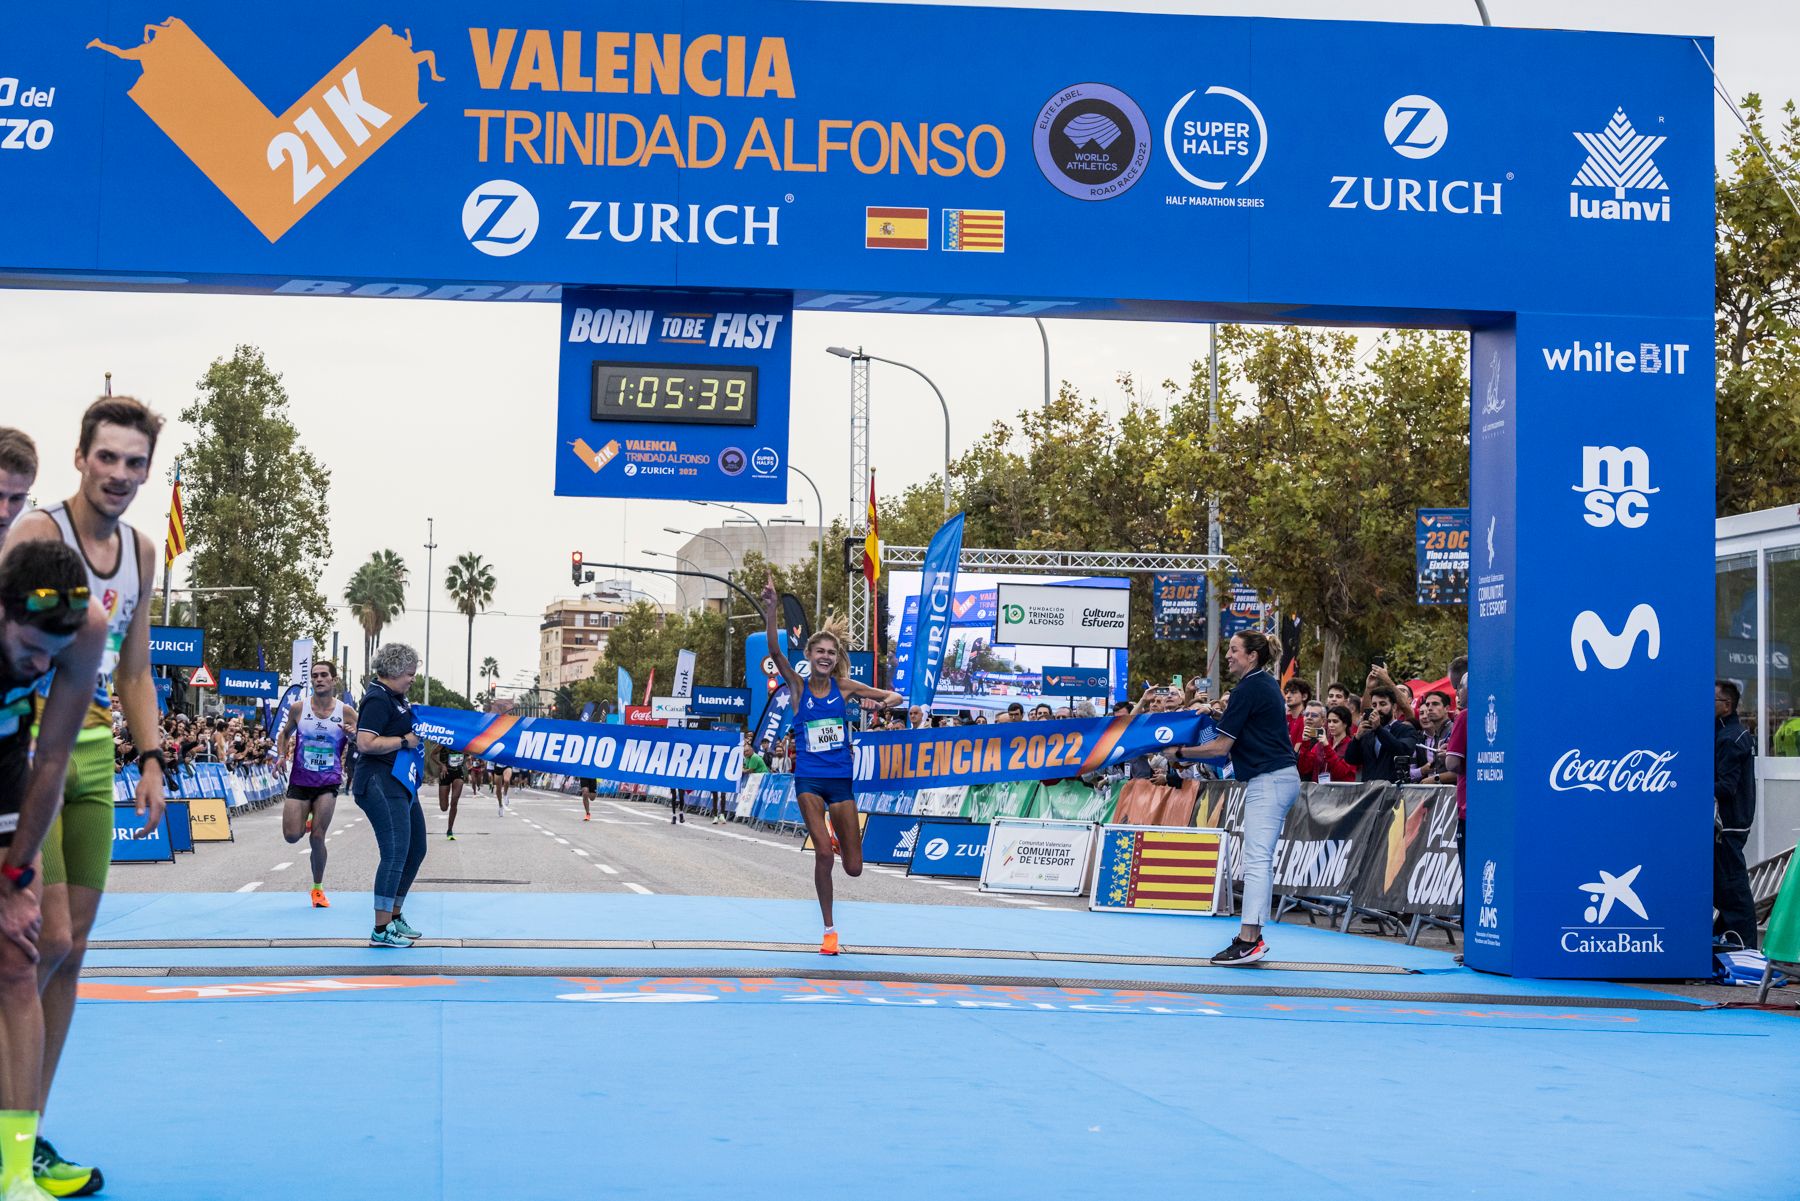 Konstanze Klosterhalfen wins the Valencia Half Marathon